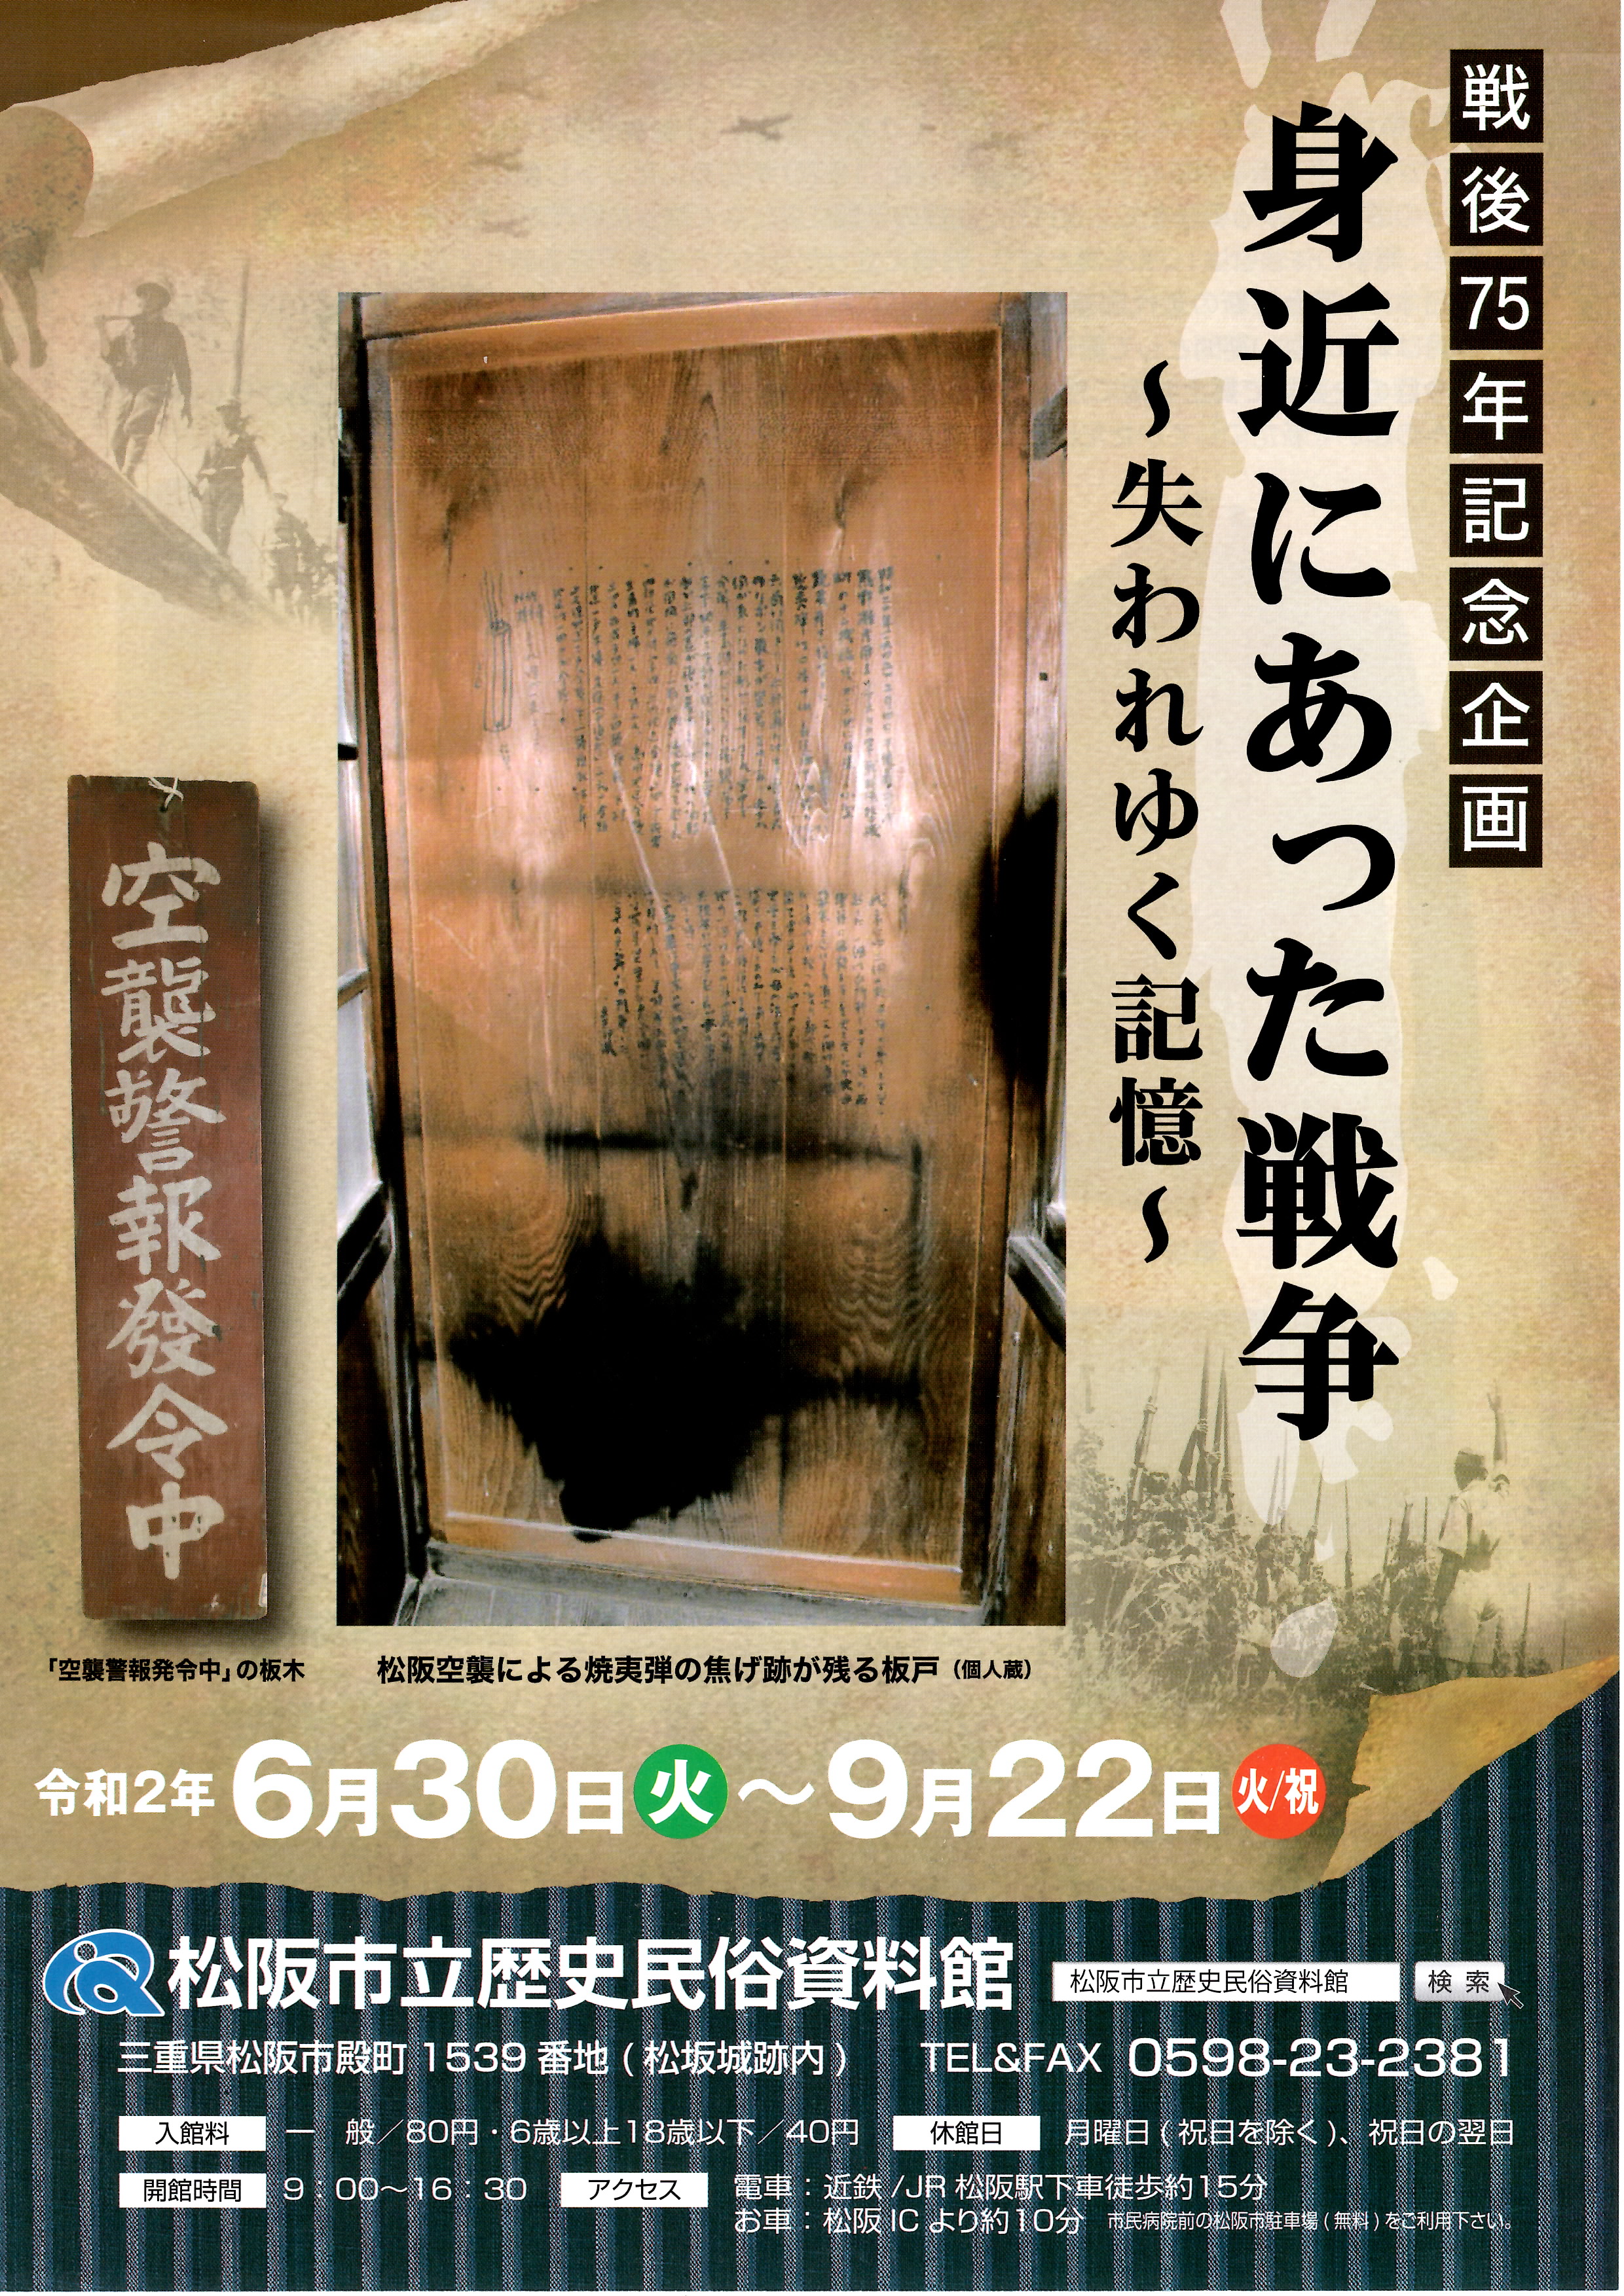 令和2年6月30日 火 9月22日 火 身近にあった戦争 失われゆく記憶 松阪市立歴史民俗資料館 松阪市観光協会